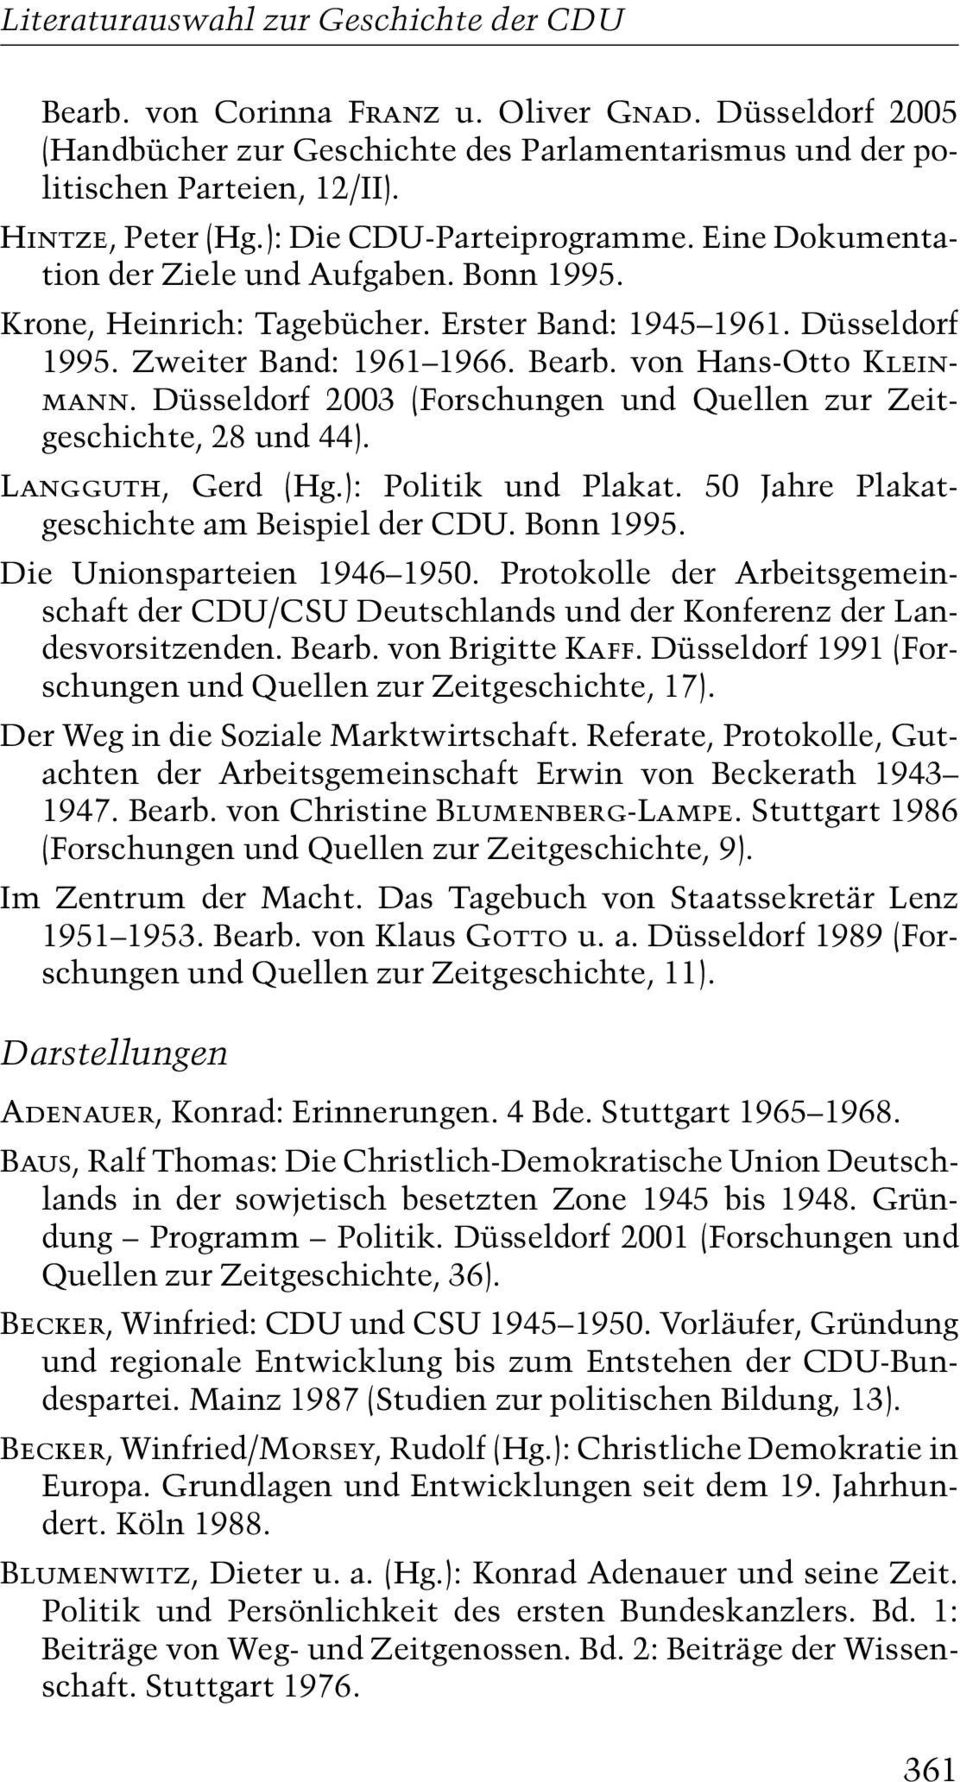 Düsseldorf 2003 (Forschungen und Quellen zur Zeitgeschichte, 28 und 44). Langguth, Gerd (Hg.): Politik und Plakat. 50 Jahre Plakatgeschichte am Beispiel der CDU. Bonn 1995.